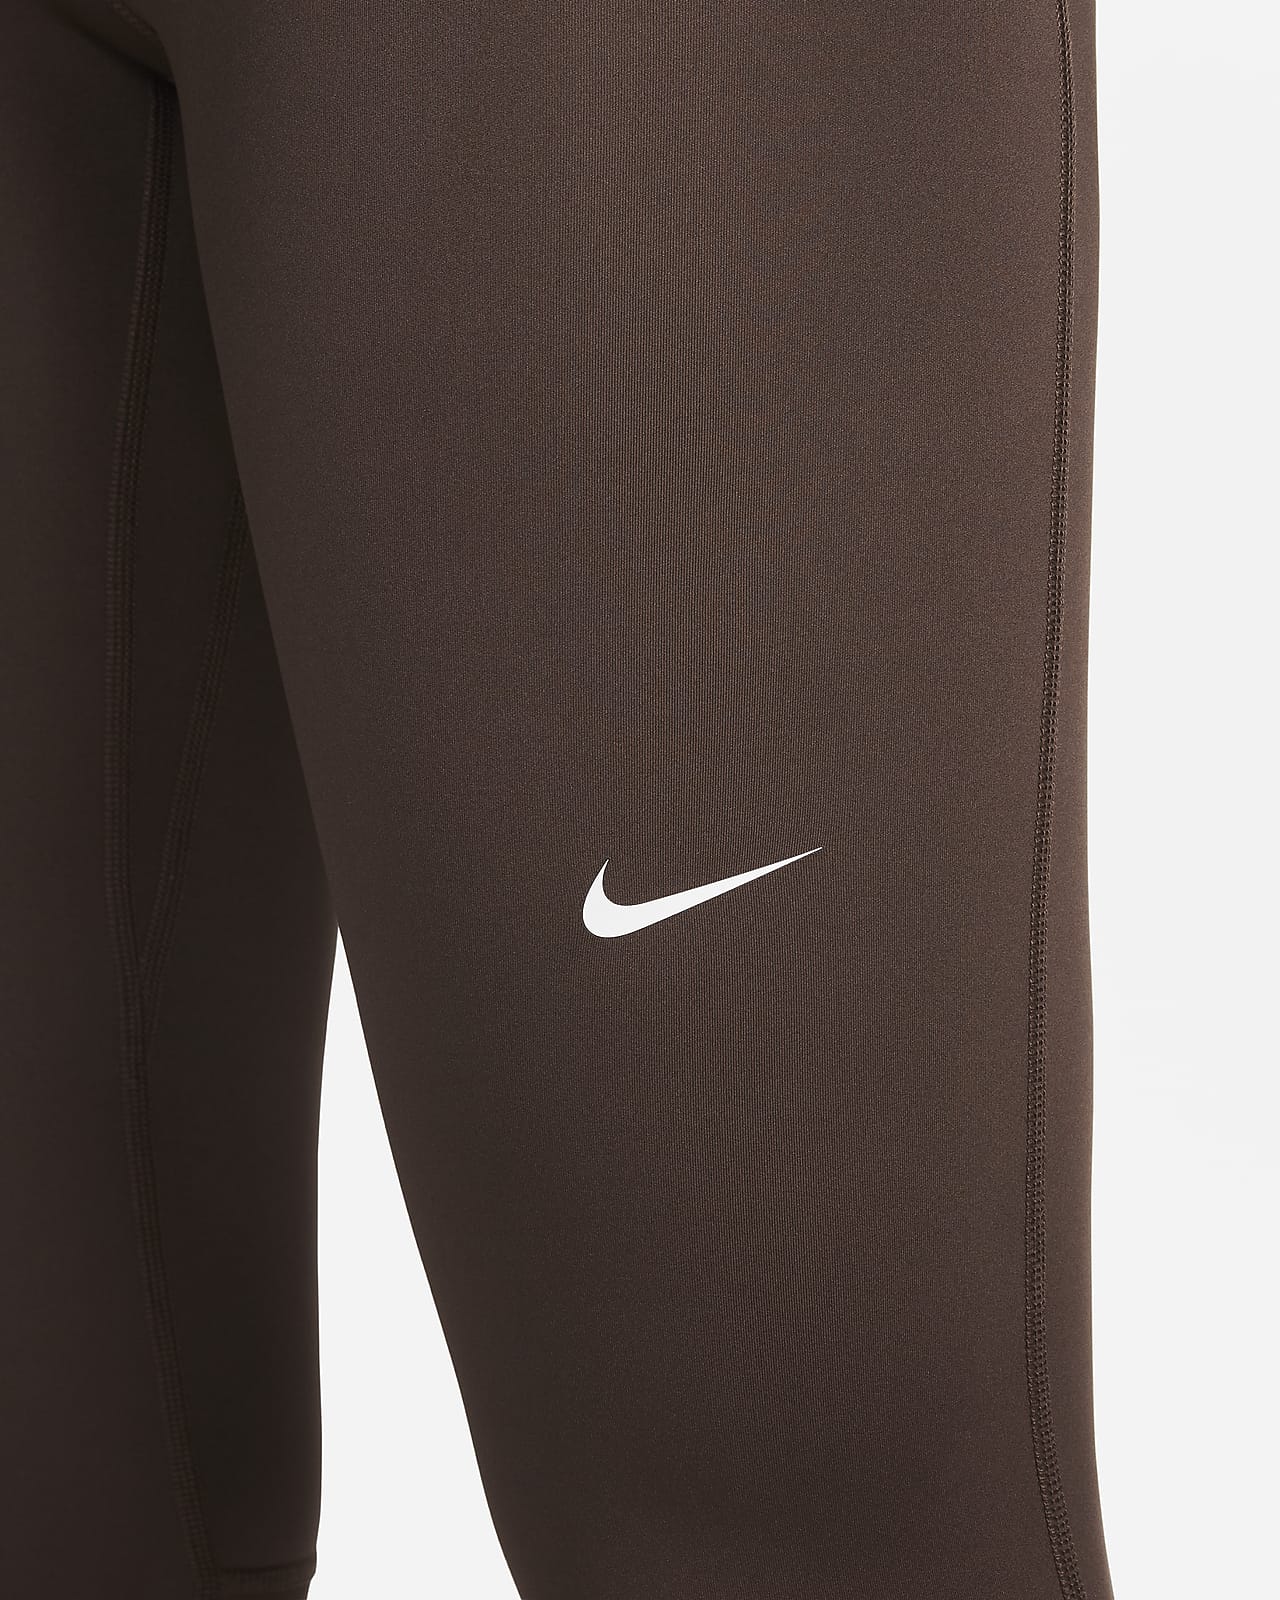 Damskie legginsy ze średnim stanem i wstawkami z siateczki Nike Pro. Nike PL